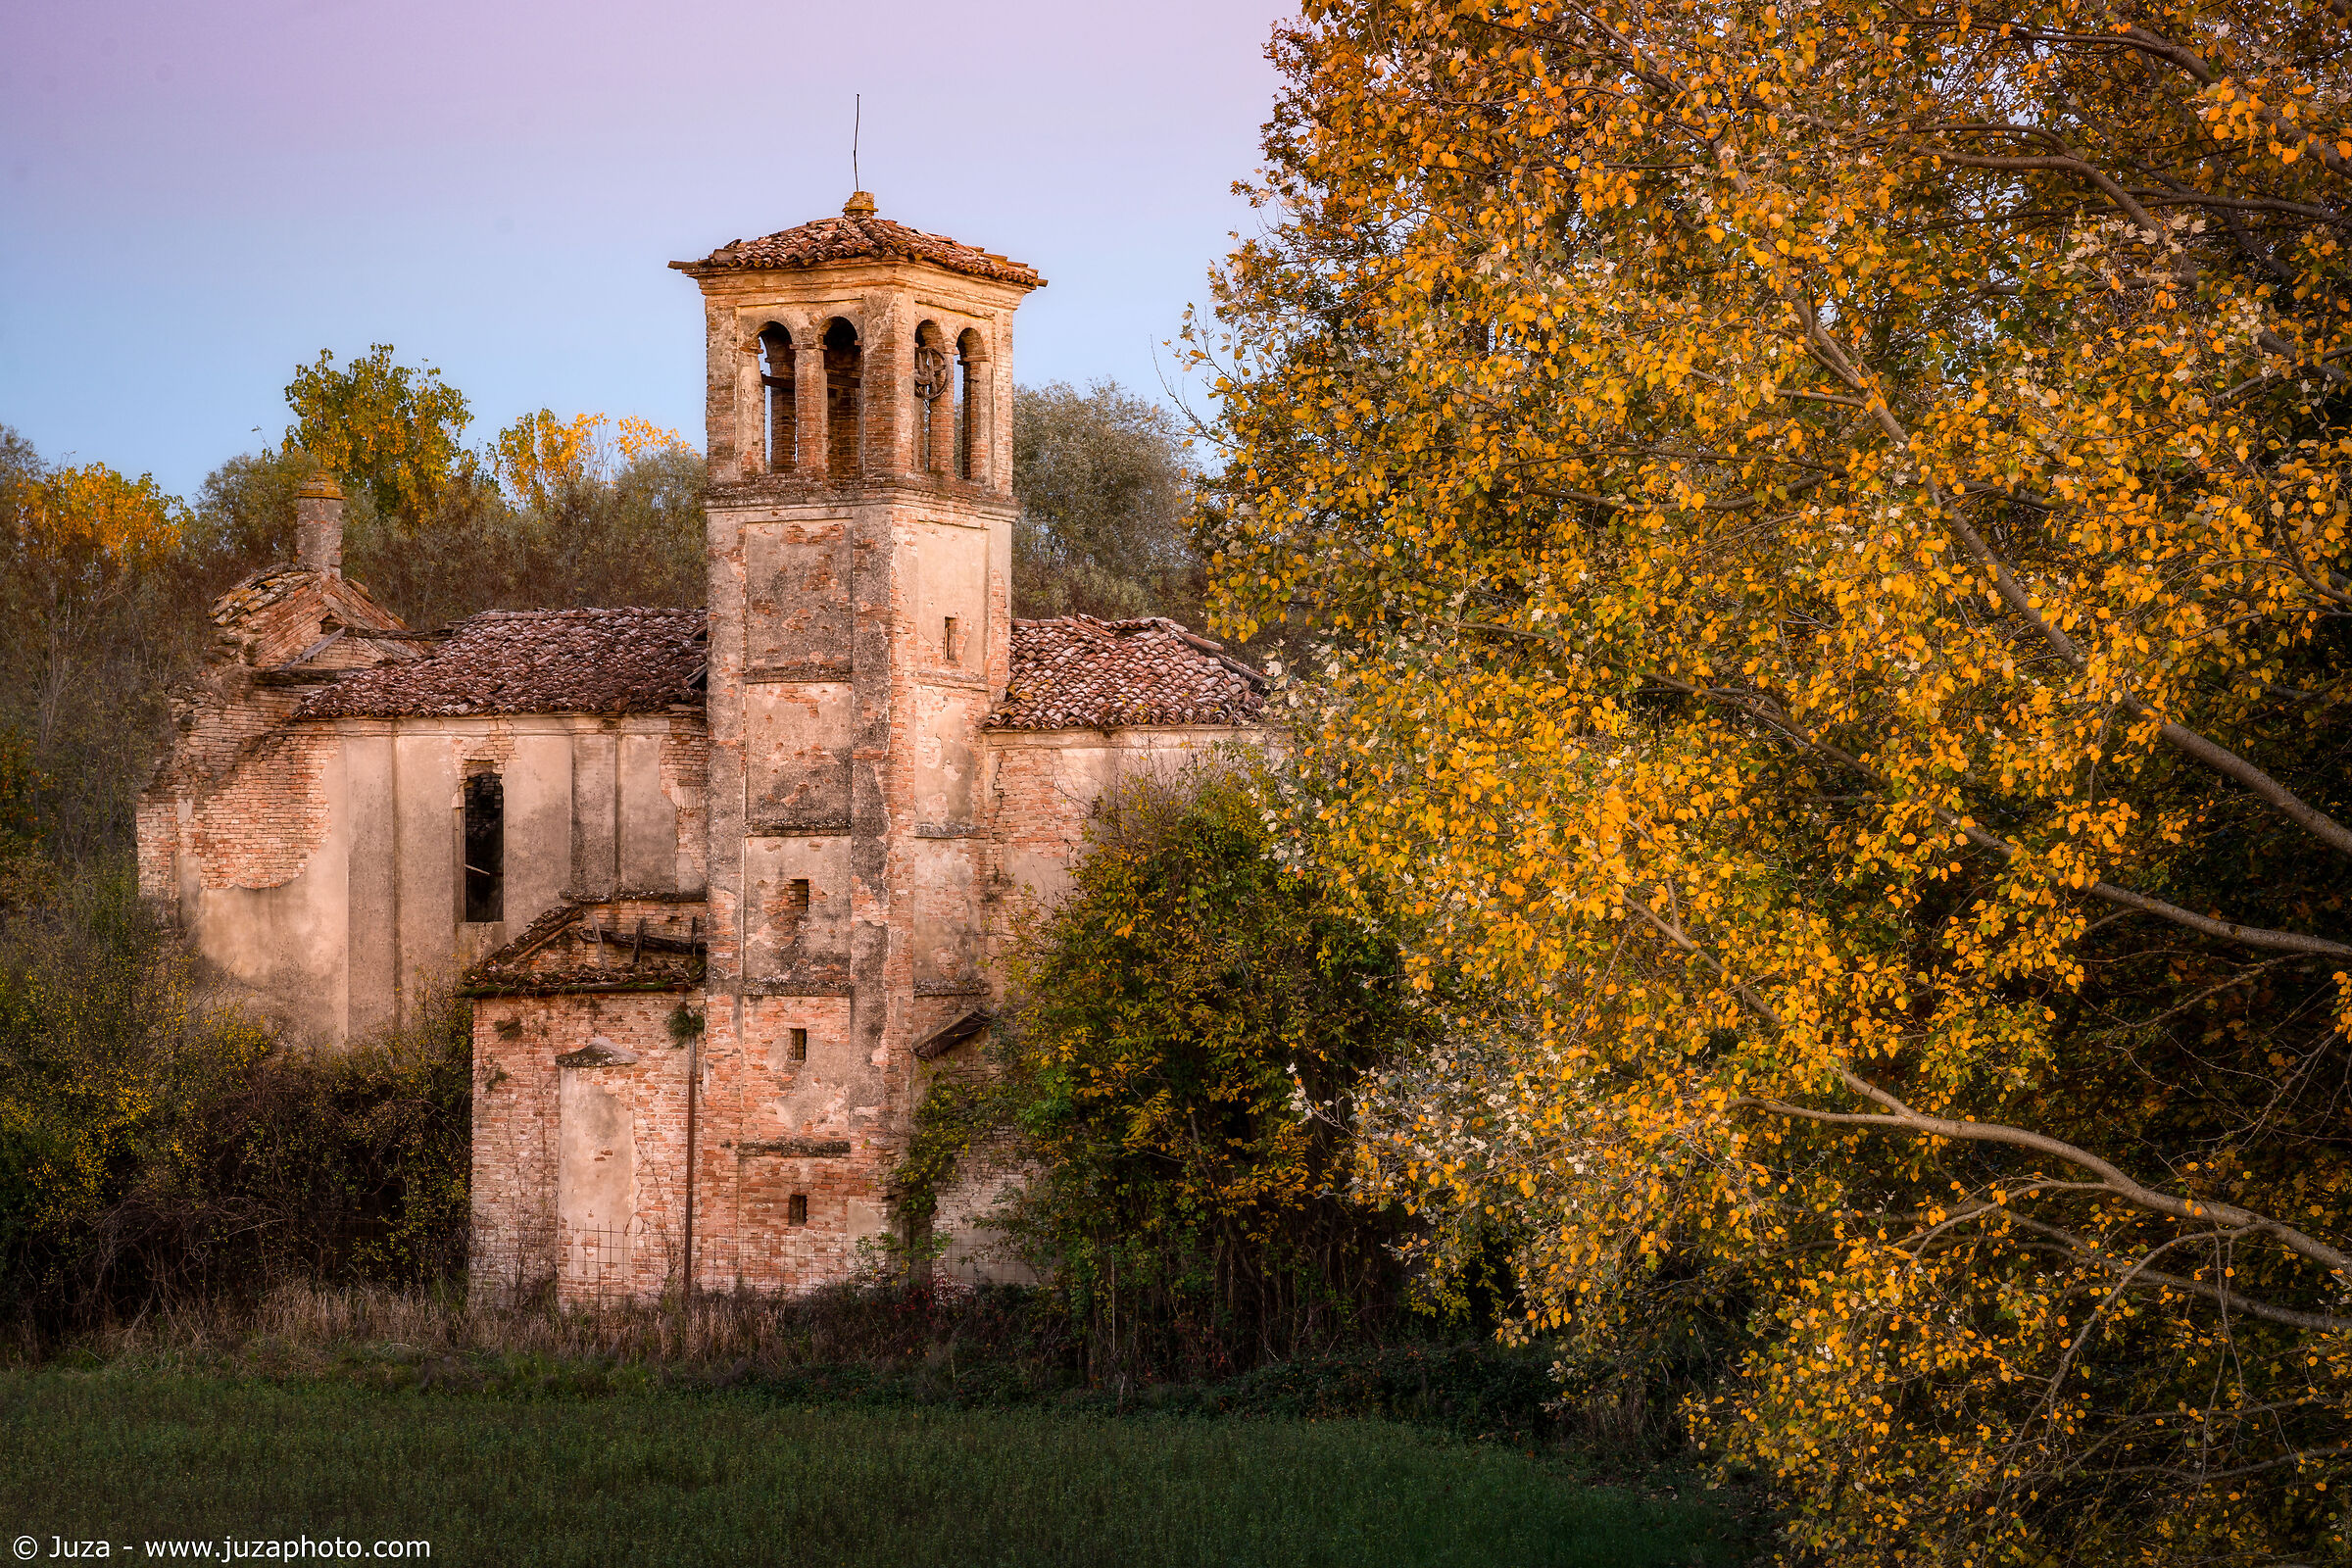 The church of Rigosa, in autumn...